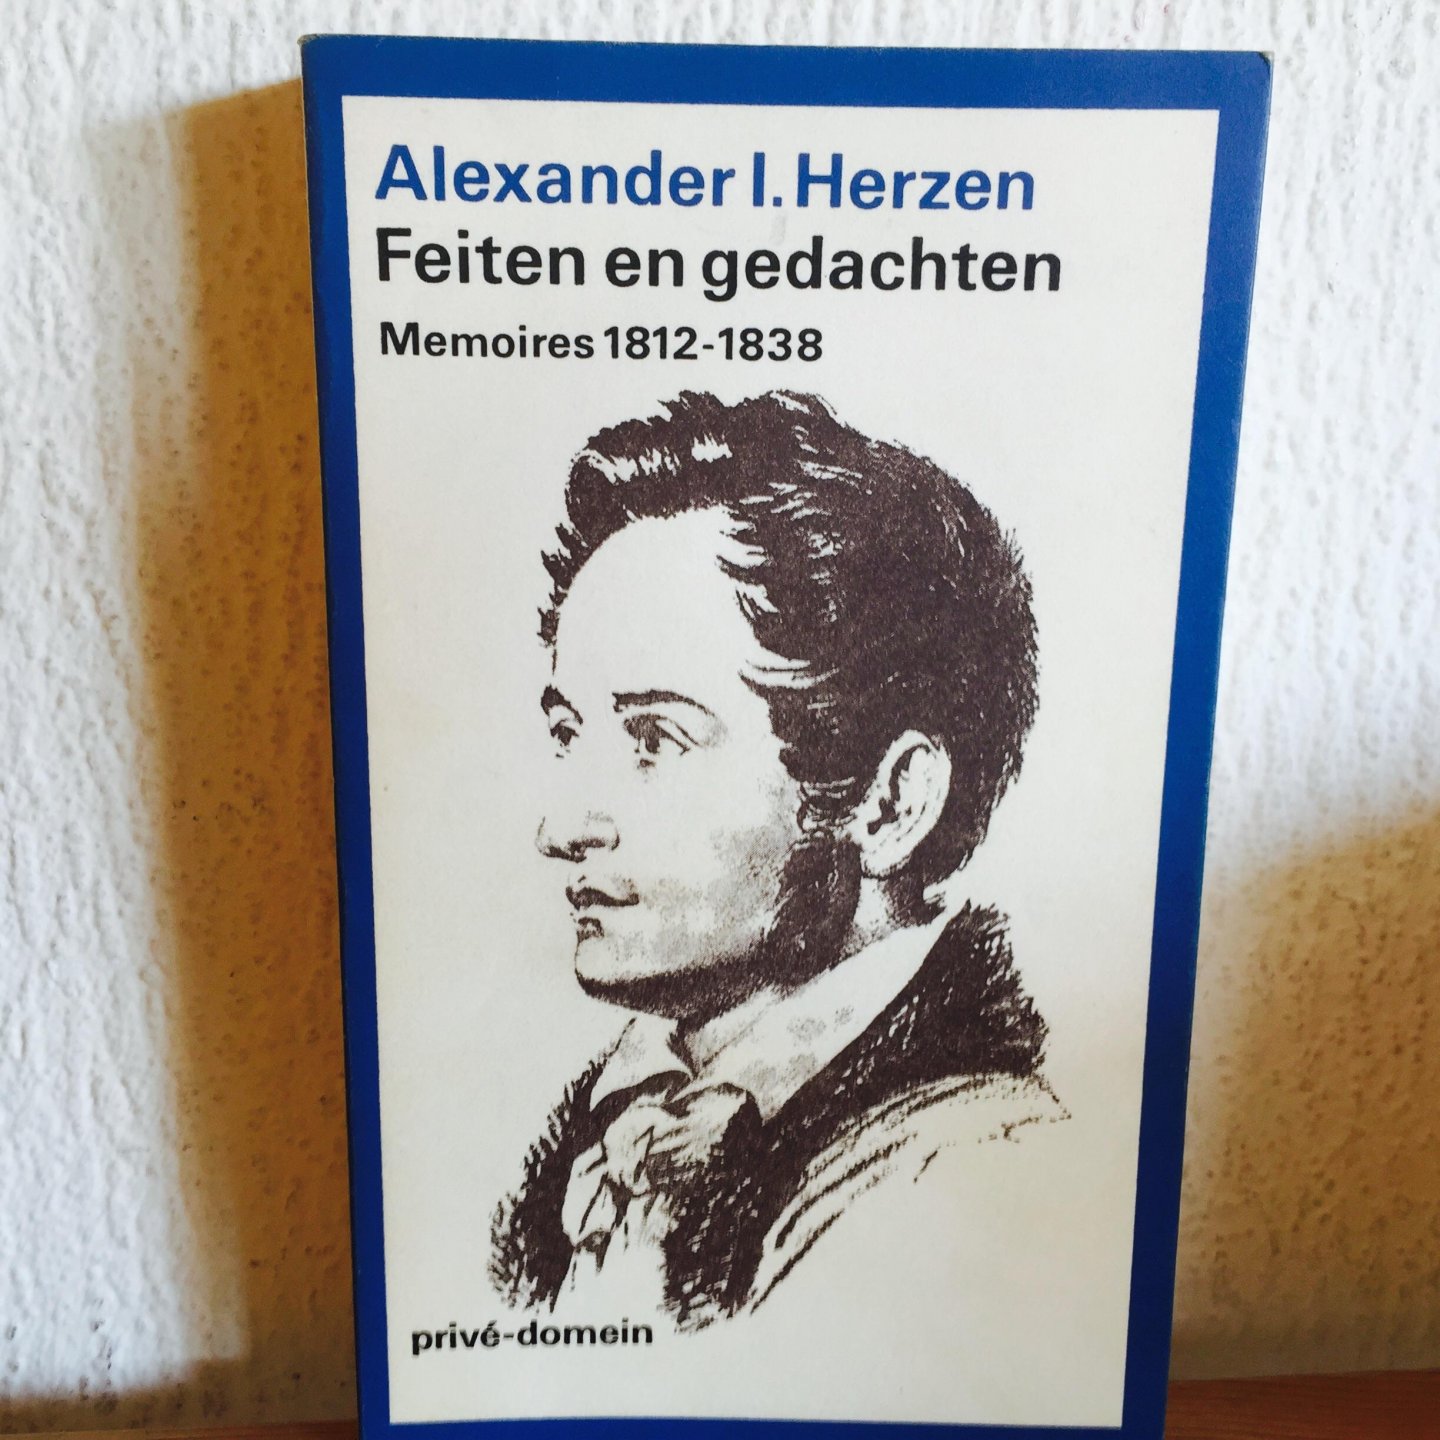 Herzen, Alexander I. - Prive domein,nummer 90 ,Feiten en gedachten memoires / 1812-1838 (POD)